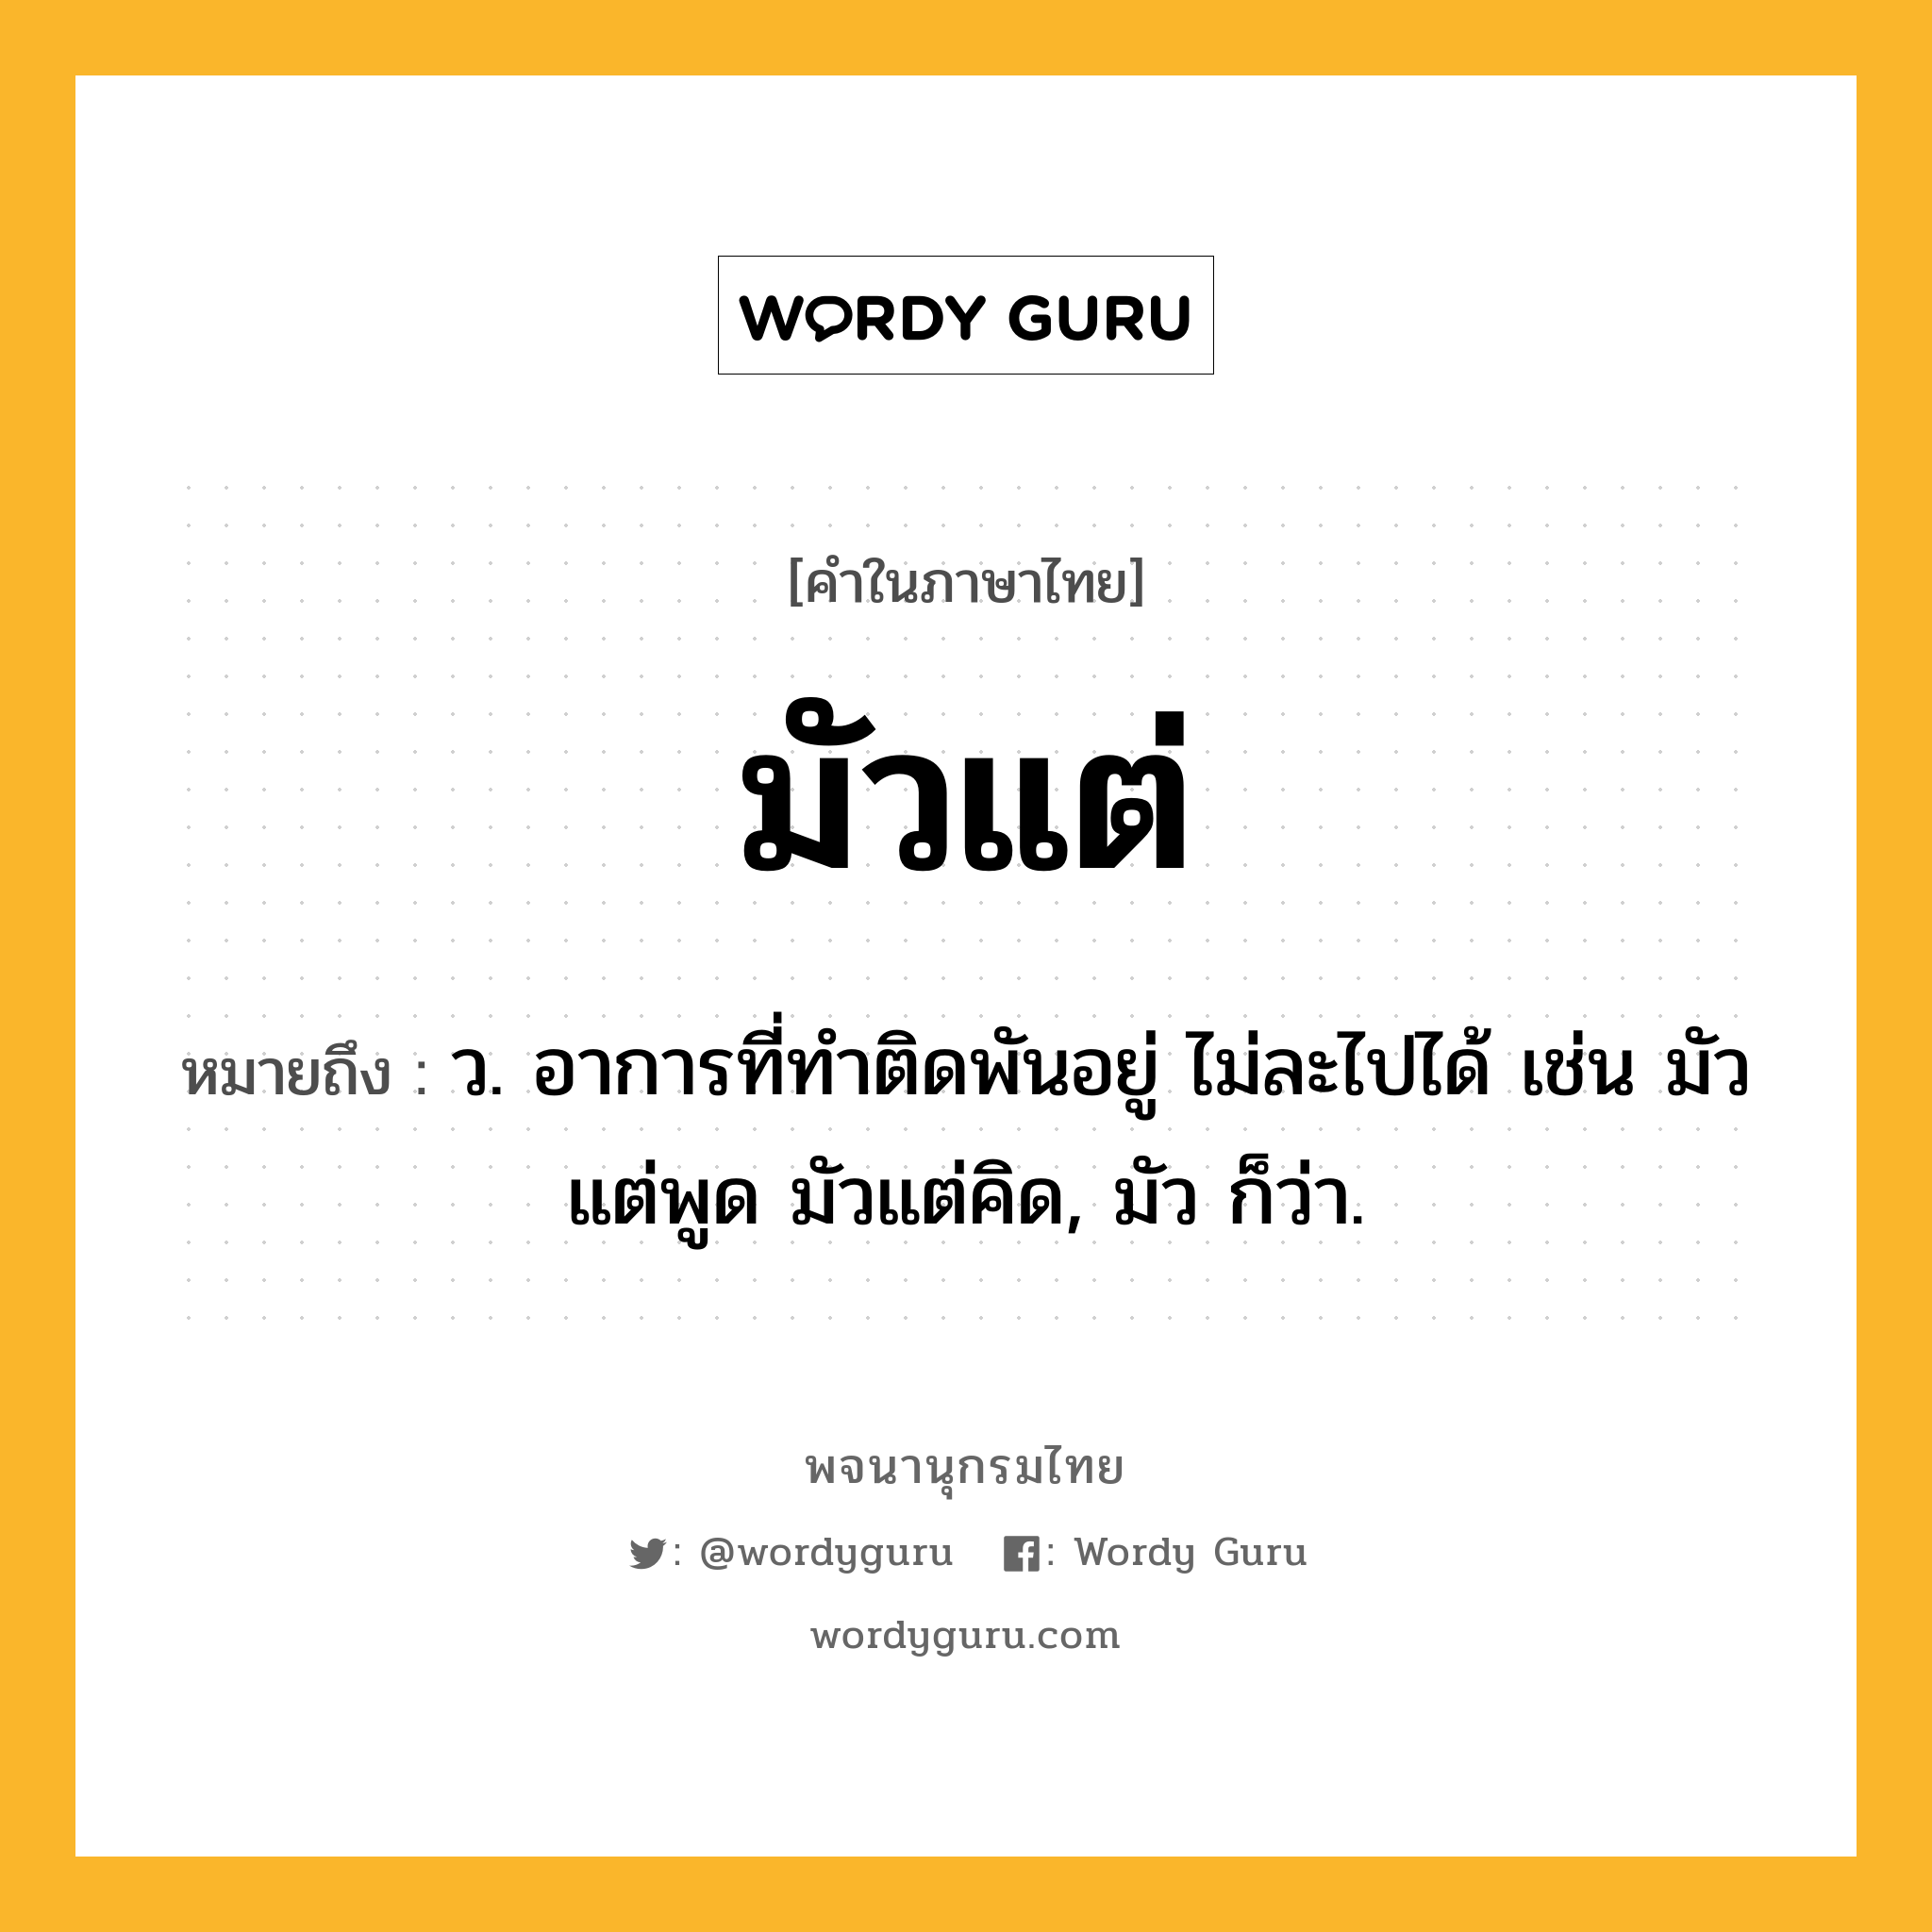 มัวแต่ หมายถึงอะไร?, คำในภาษาไทย มัวแต่ หมายถึง ว. อาการที่ทำติดพันอยู่ ไม่ละไปได้ เช่น มัวแต่พูด มัวแต่คิด, มัว ก็ว่า.